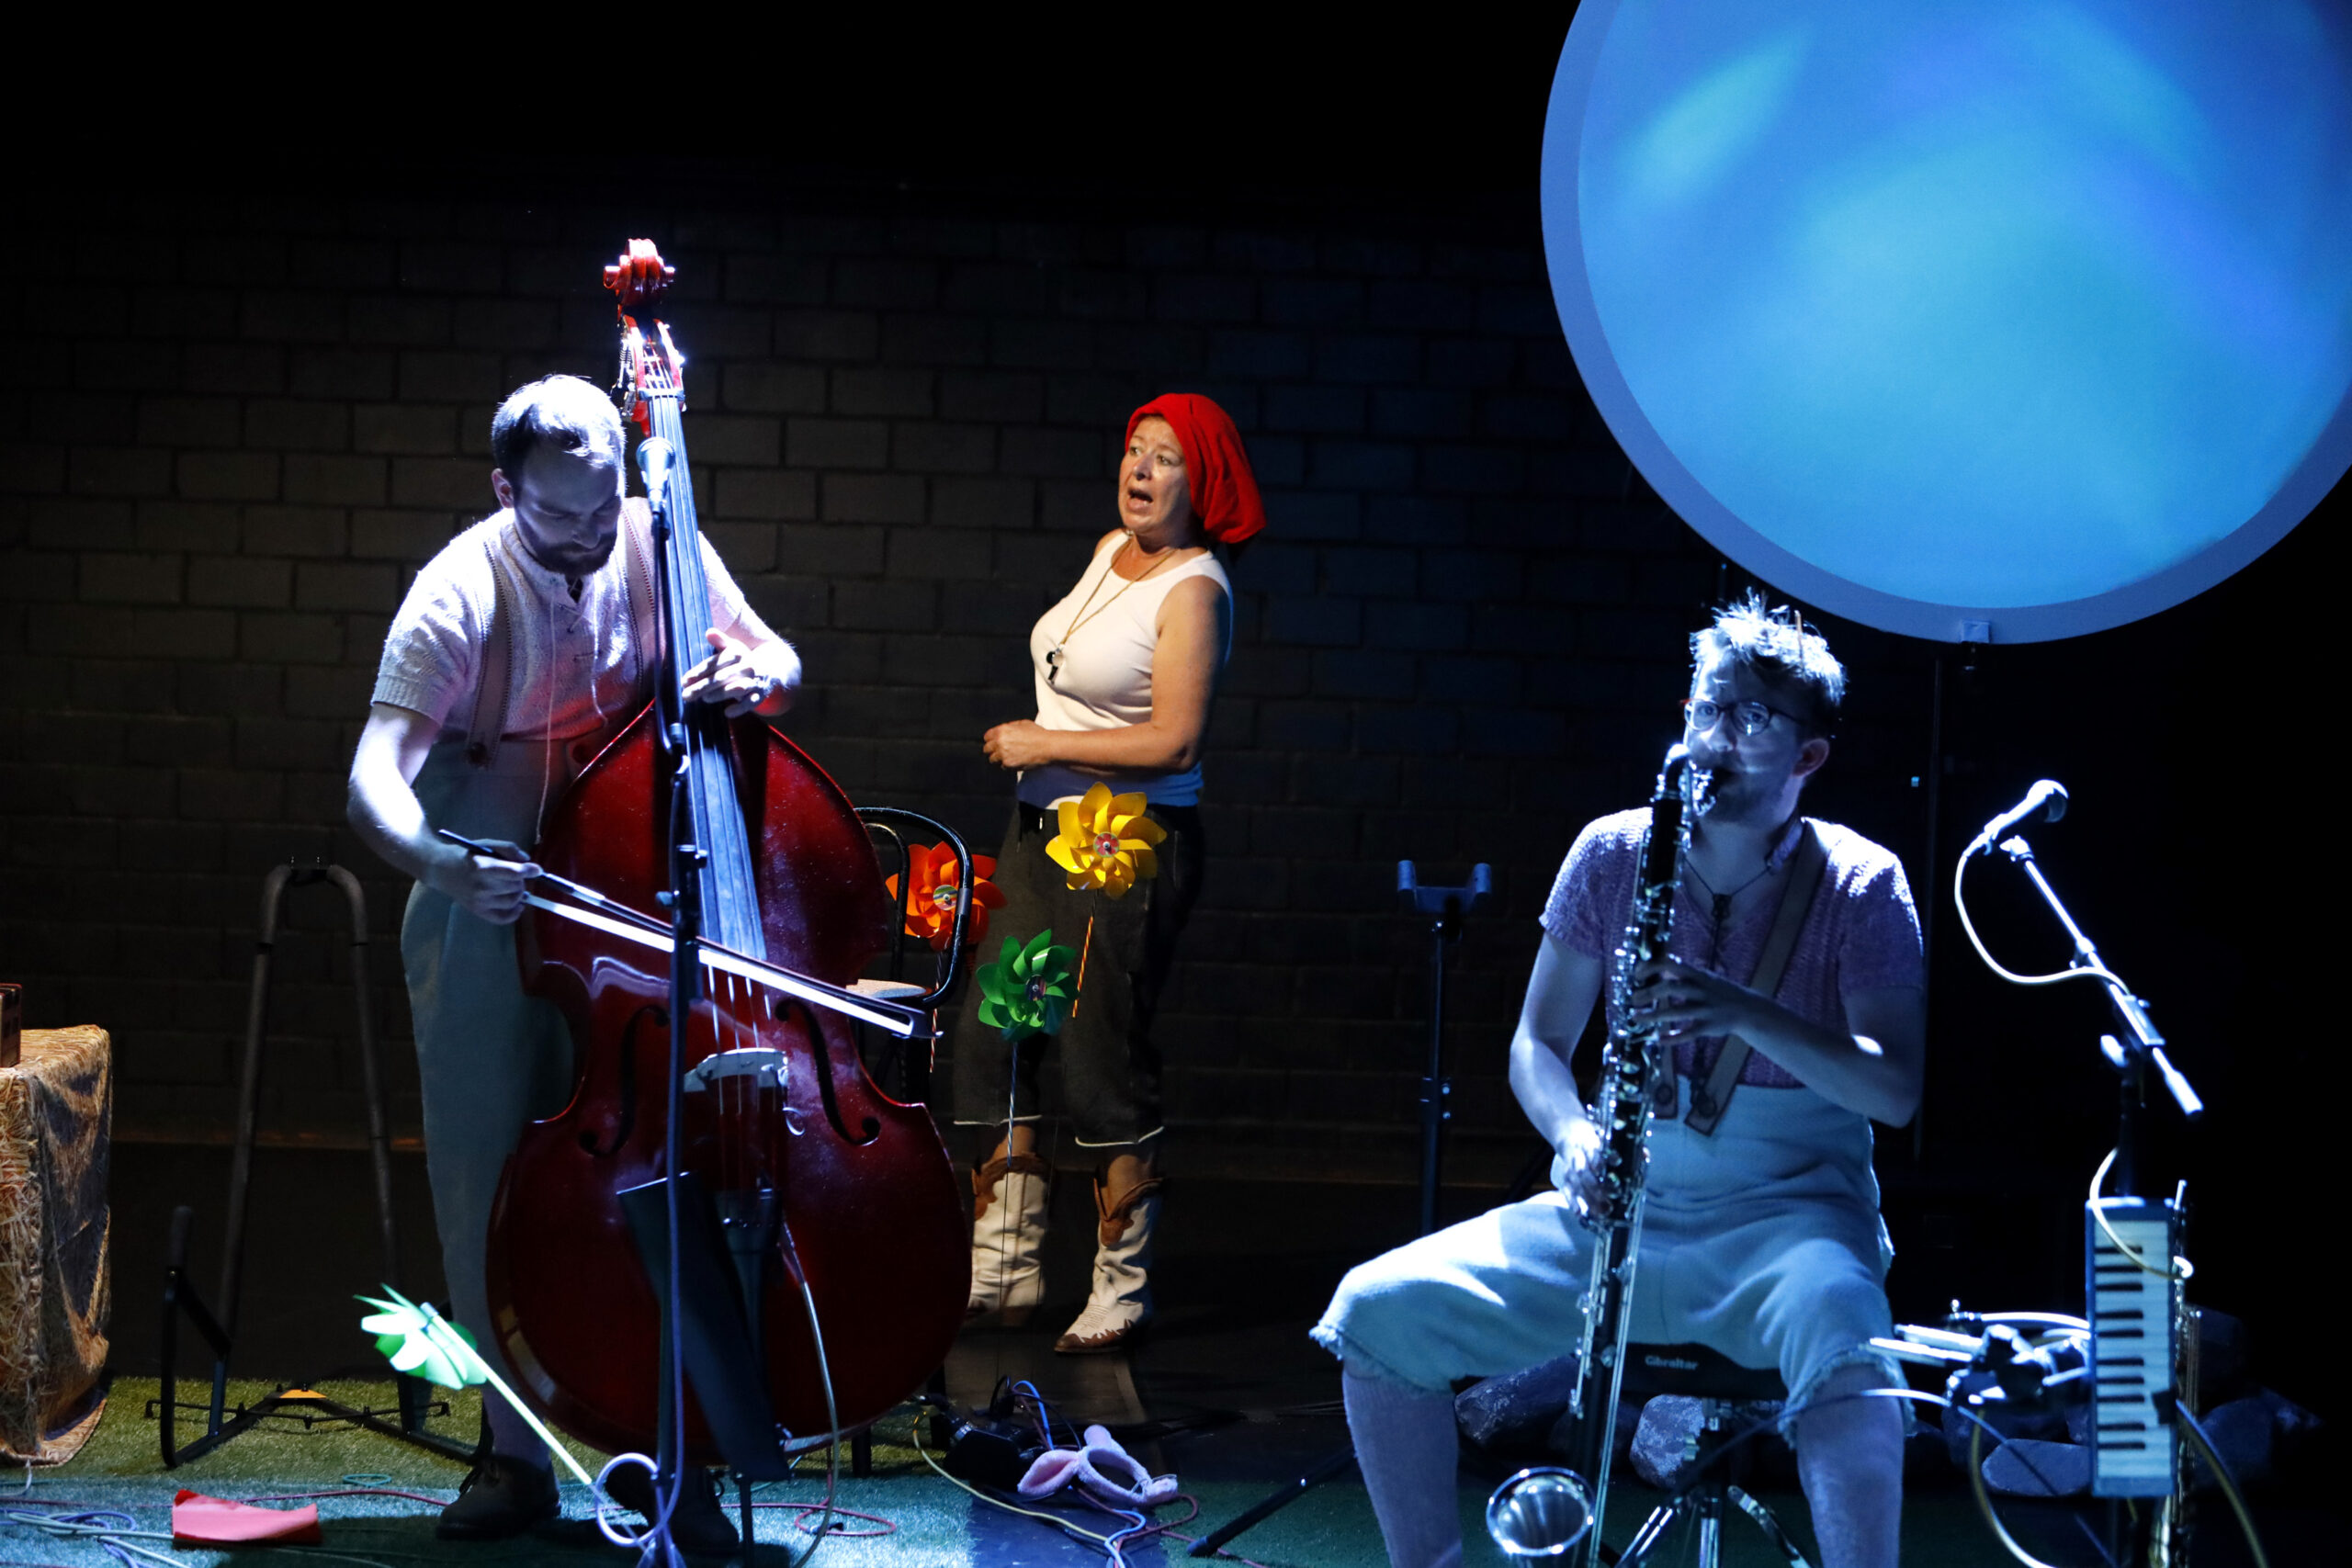 Musiktheaterperformance „Hast du schon gehört?“ mit Silas Eifler (Kontrabass), Tina Jücker (hinten) und Tobias Gubesch (Saxofon).